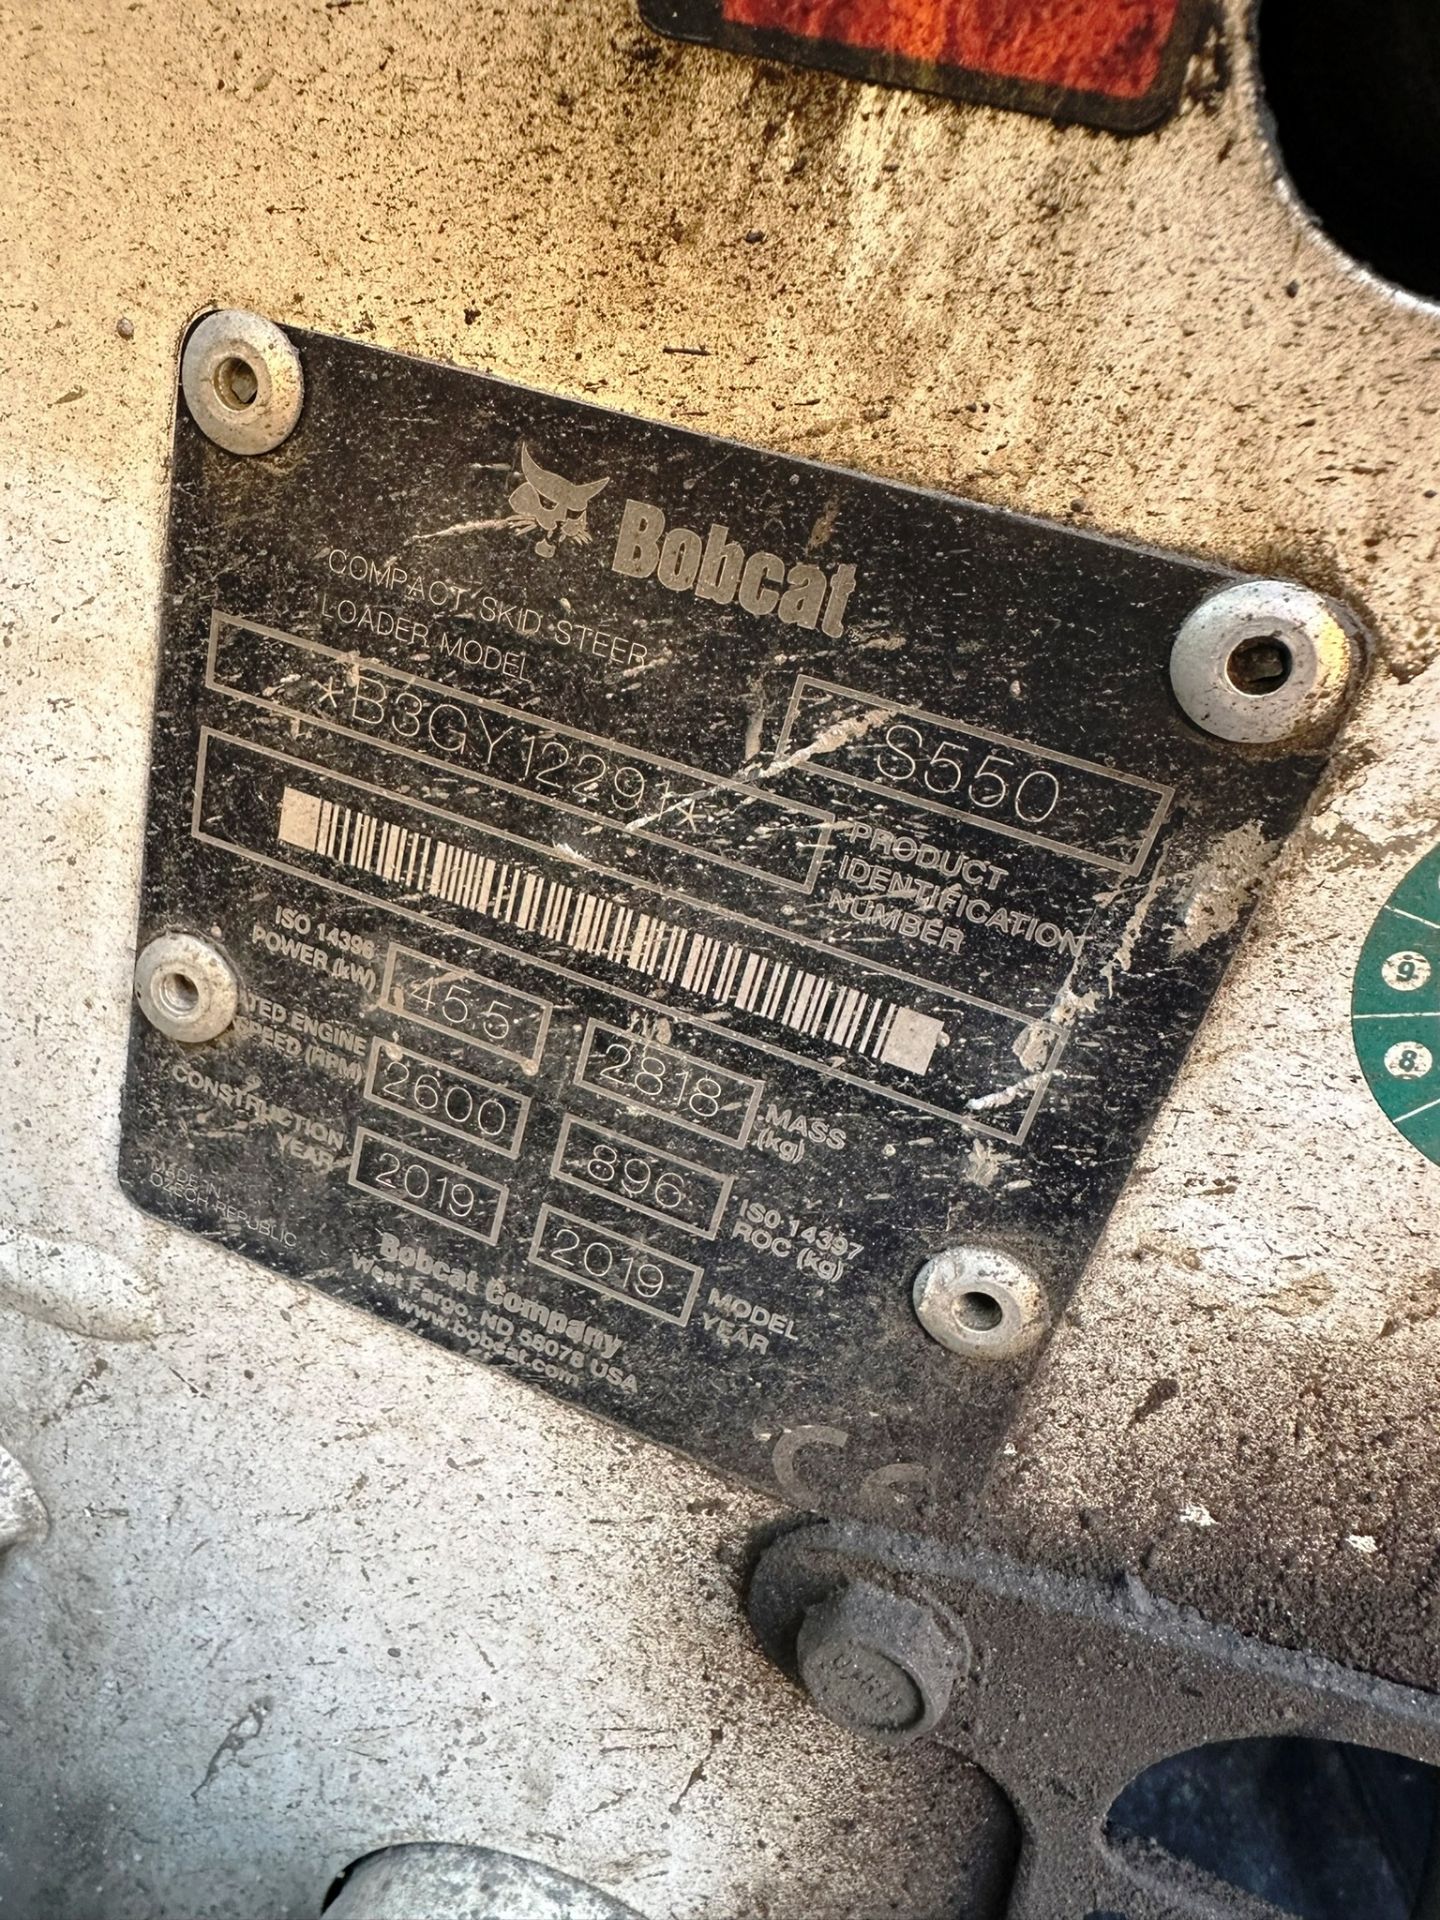 Bobcat S550 Skidsteer Loader | YOM: 2019 | Hours: 169 - Bild 6 aus 16